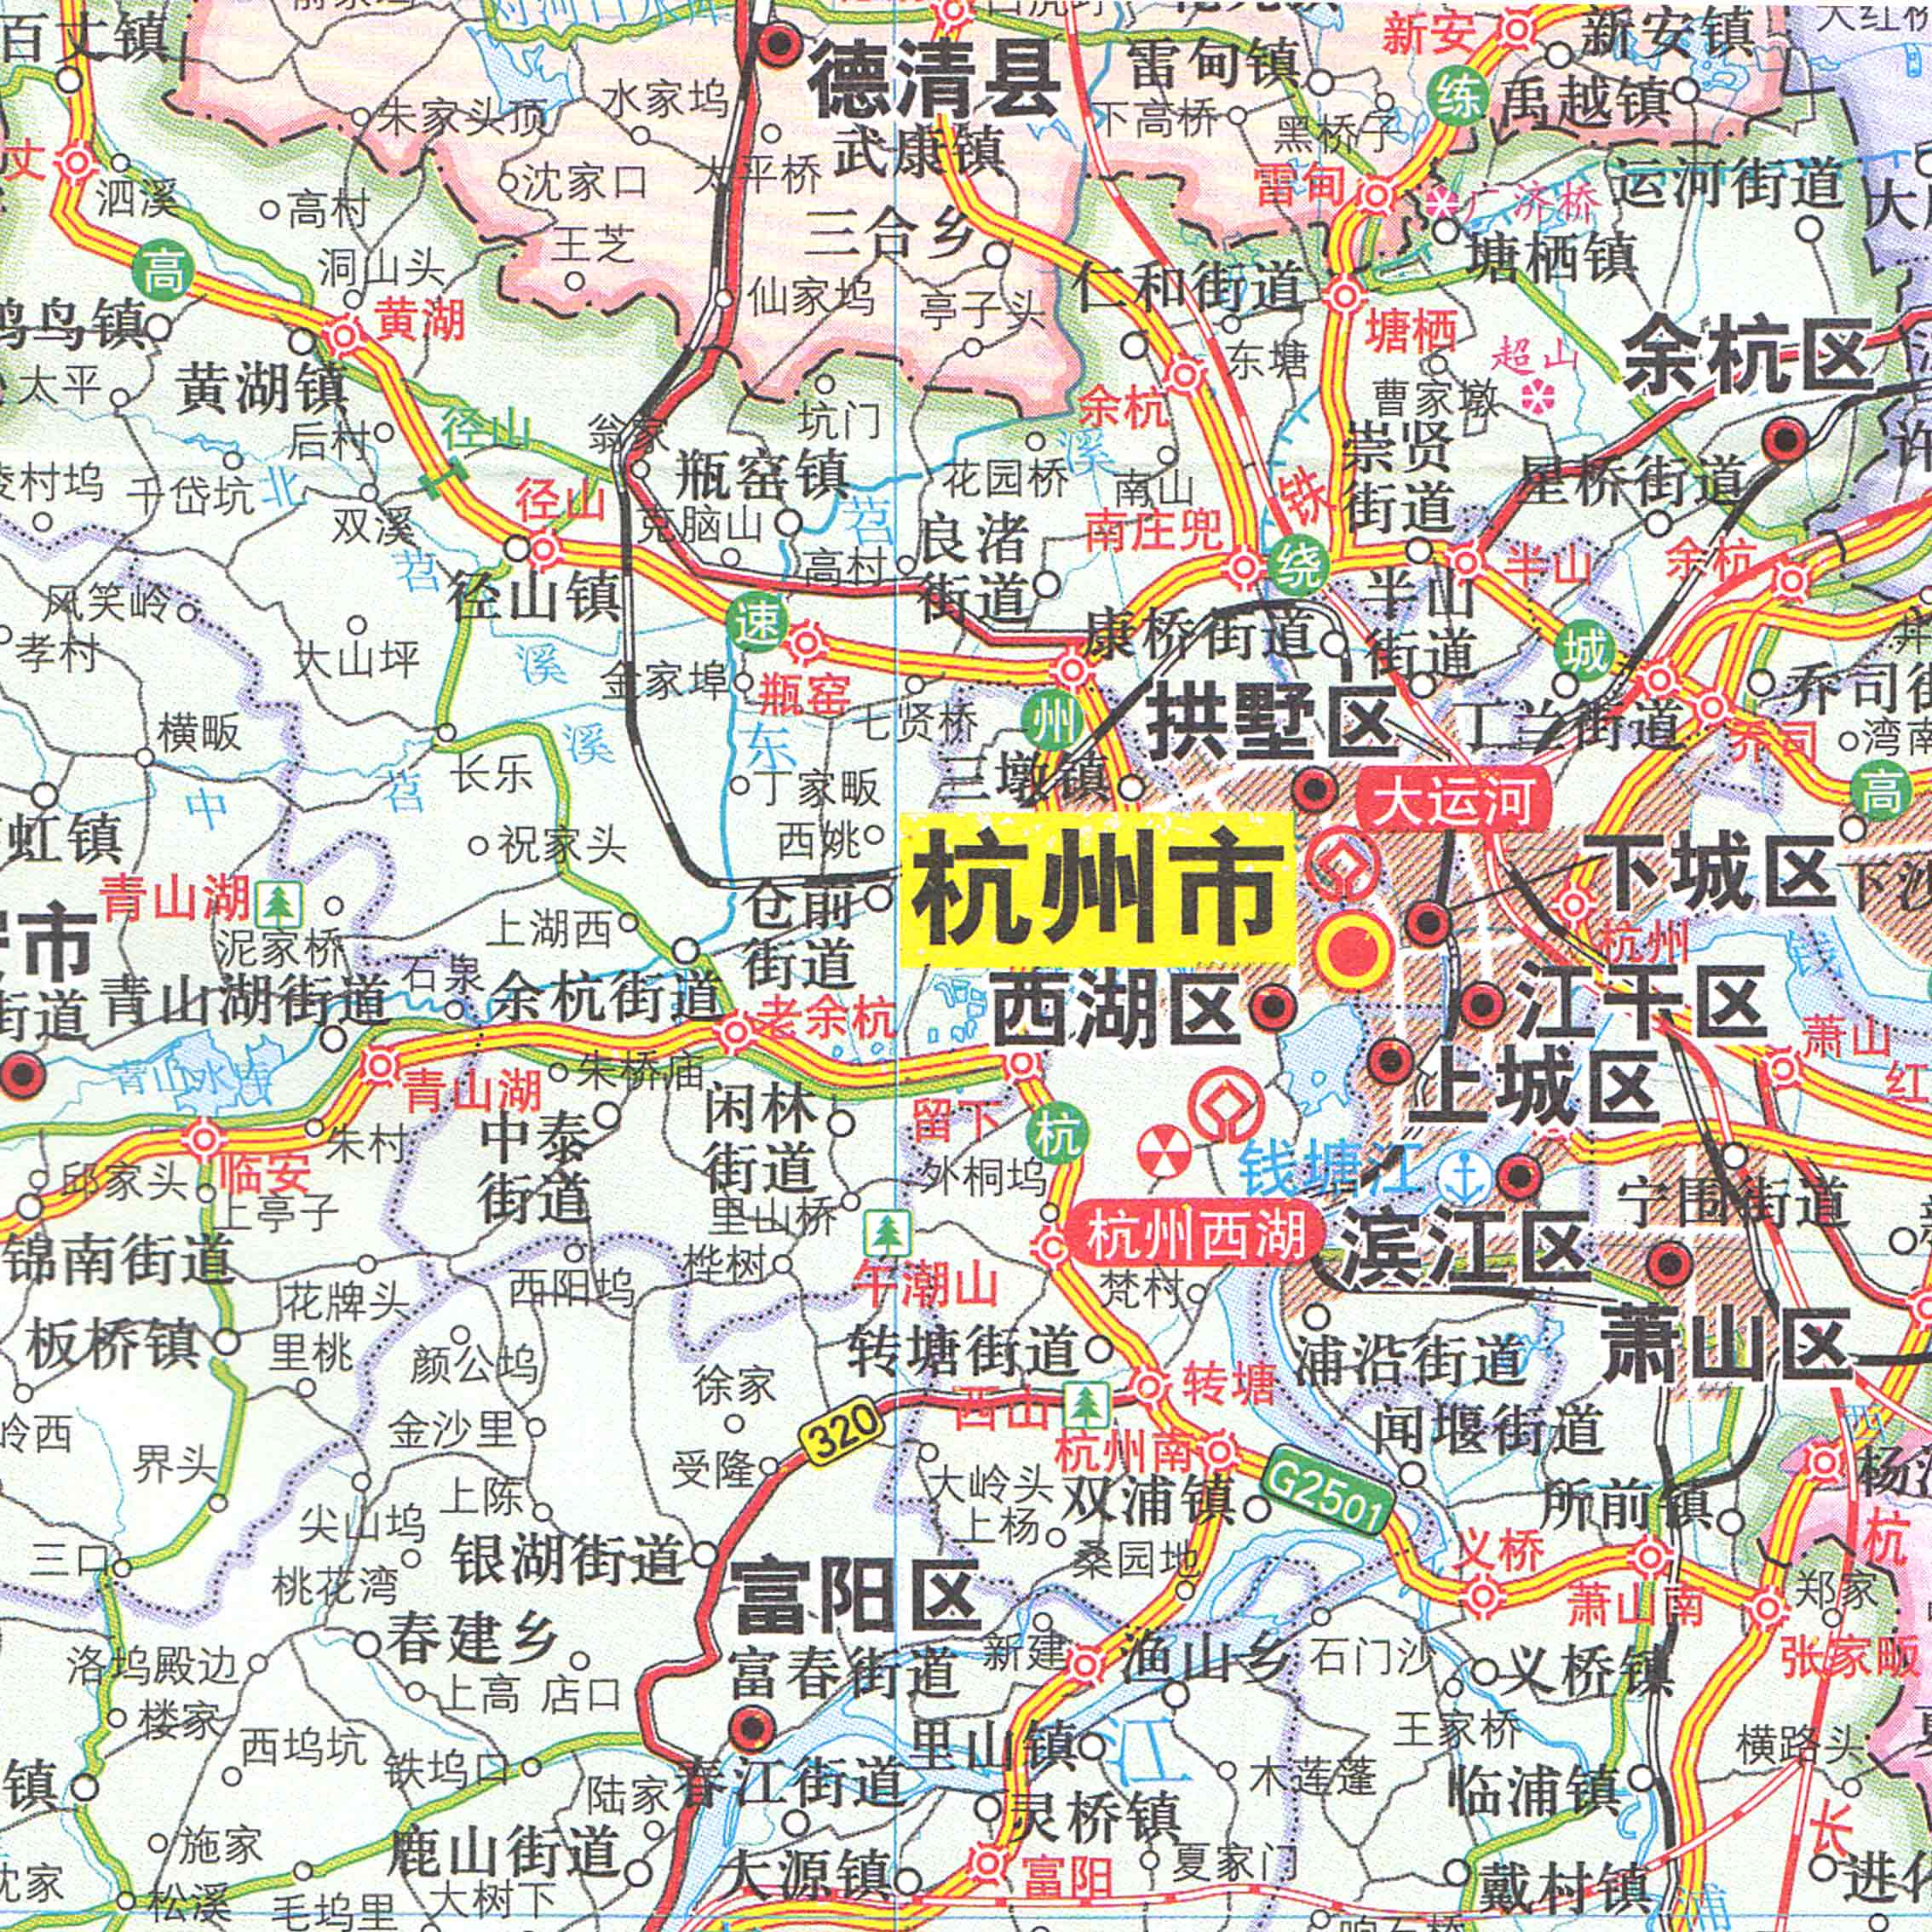 浙江省地图 2017新版浙江地图贴图 纸质盒装地图 杭州